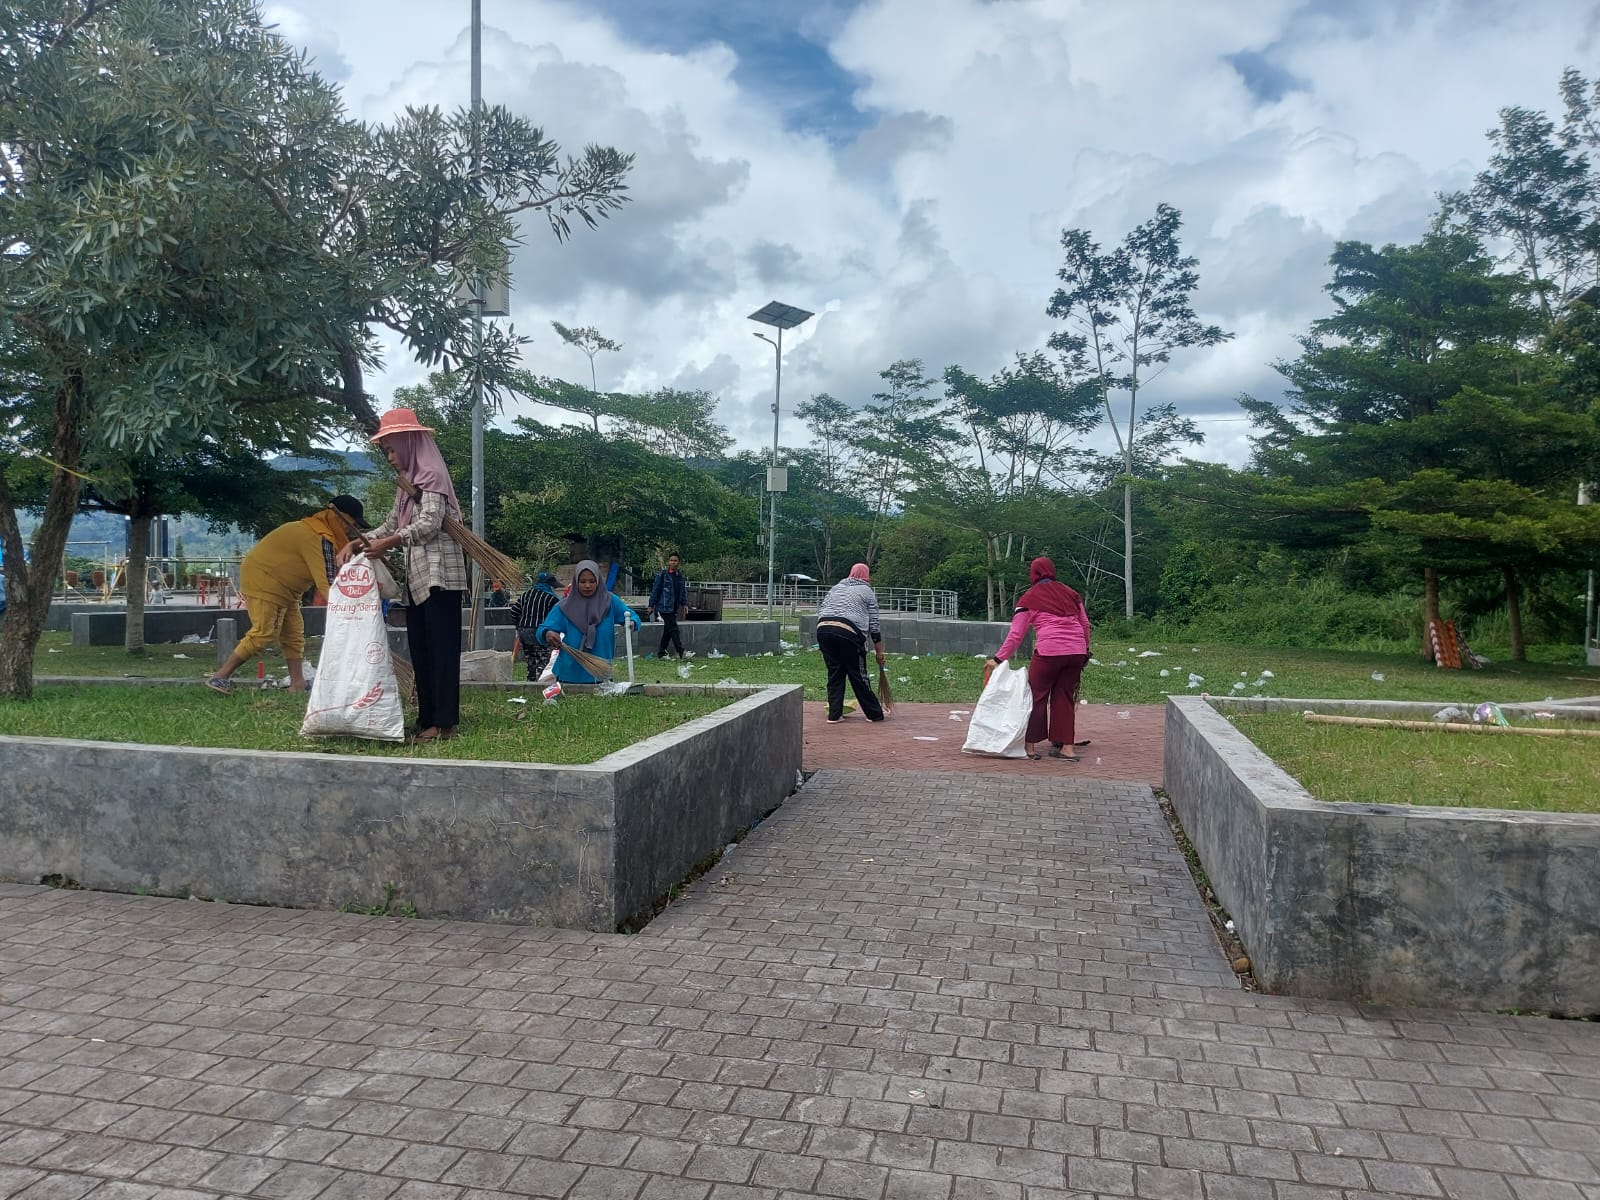 Penampakan Sampah Berserakan di Taman Karang Nio Lebong, Petugas Kebersihan Langsung Turun Tangan